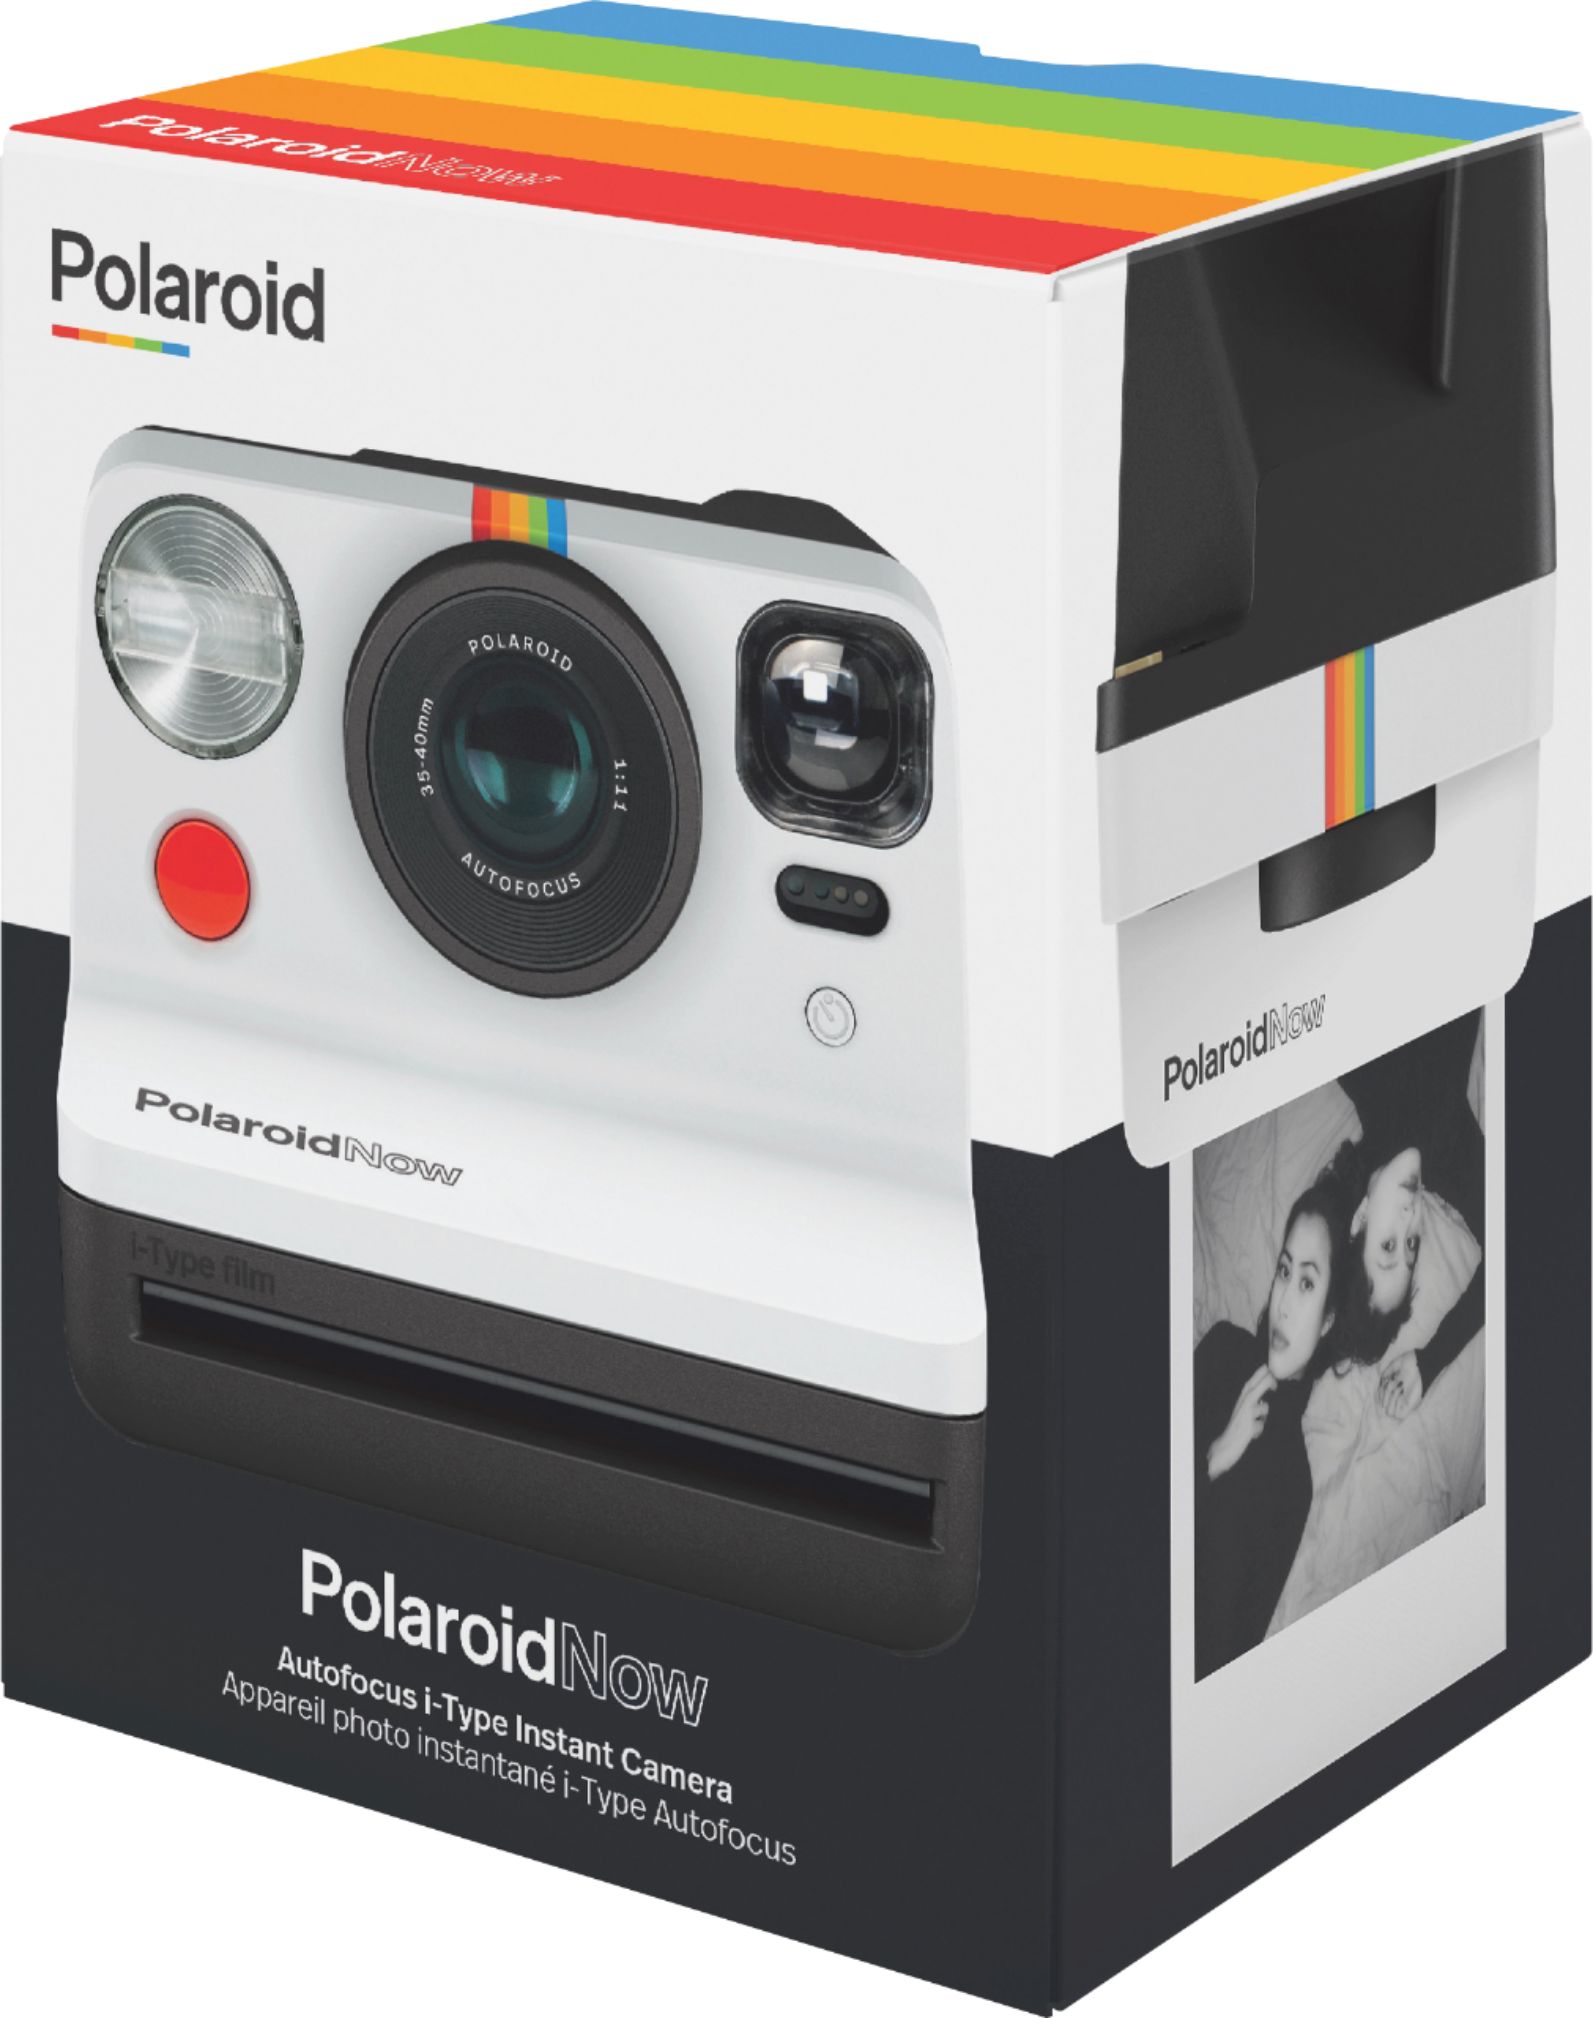 Polaroid Now I-Type Now in Black & White - LeZot Camera